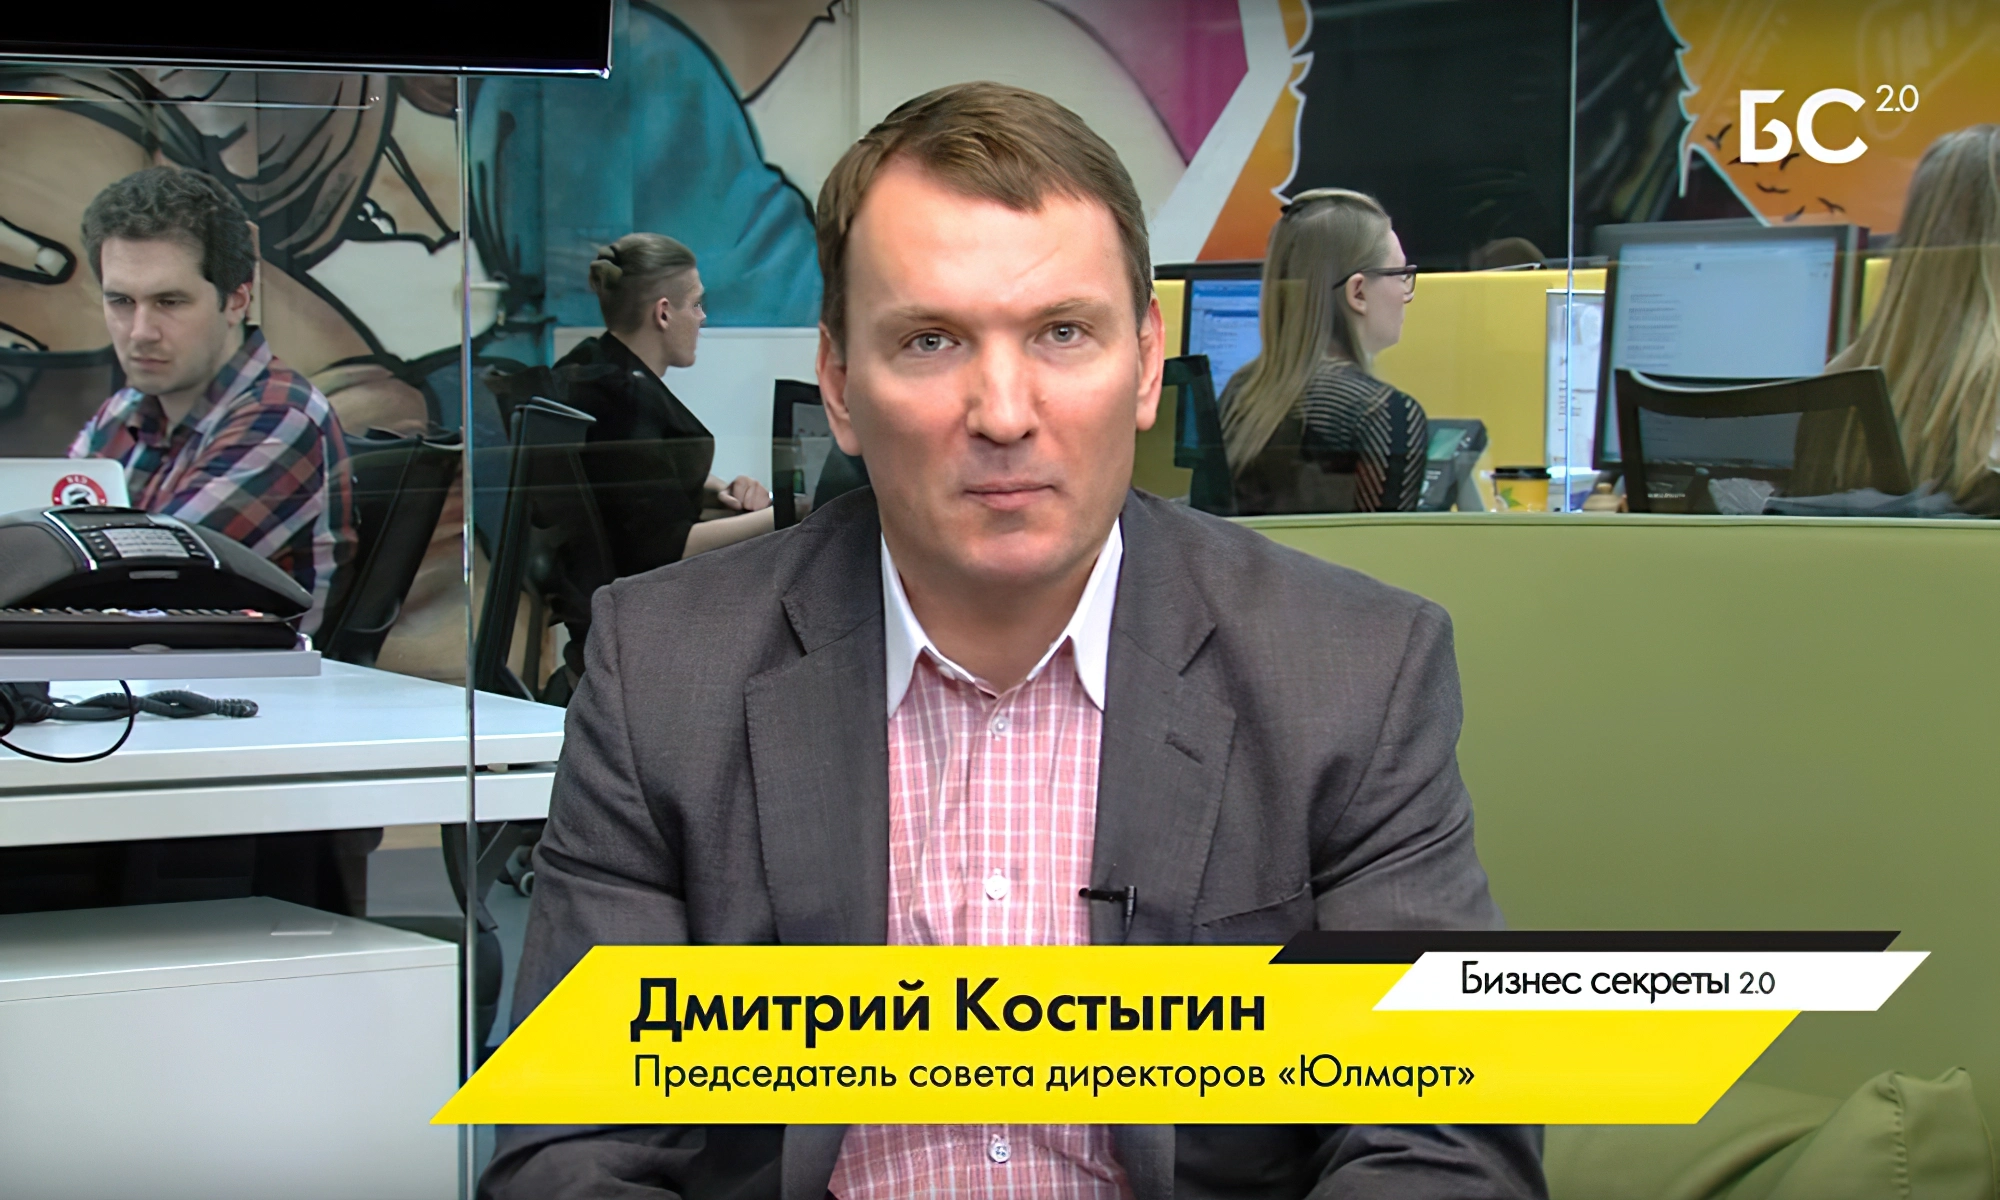 Дмитрий Костыгин - председатель совета директоров гипермаркета «Юлмарт»